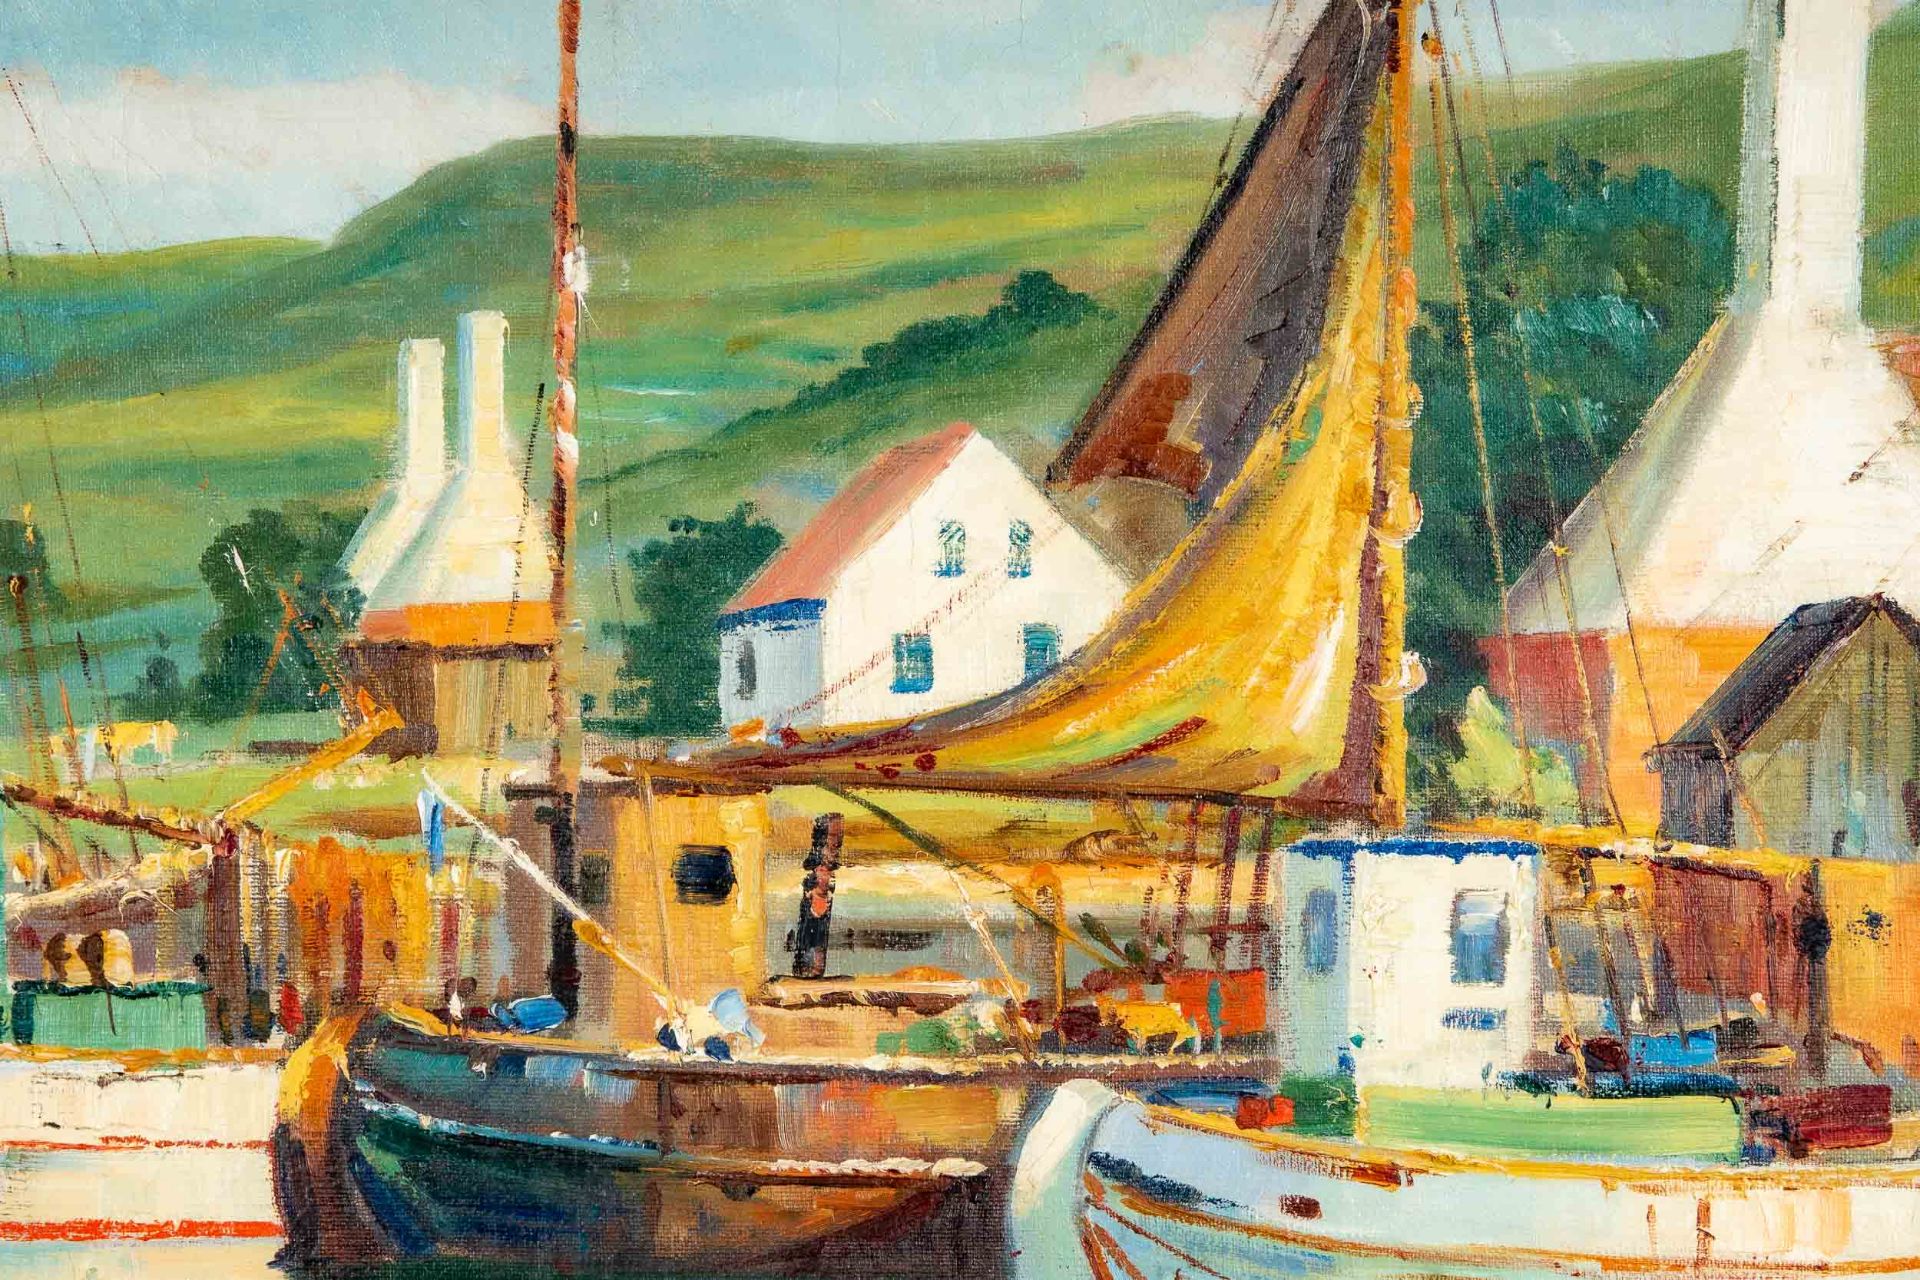 "Farbenfroher dänischer Hafen", großformatiges Gemälde, ca. 88 x 130 cm, unten links signiert: "Aru - Bild 5 aus 8